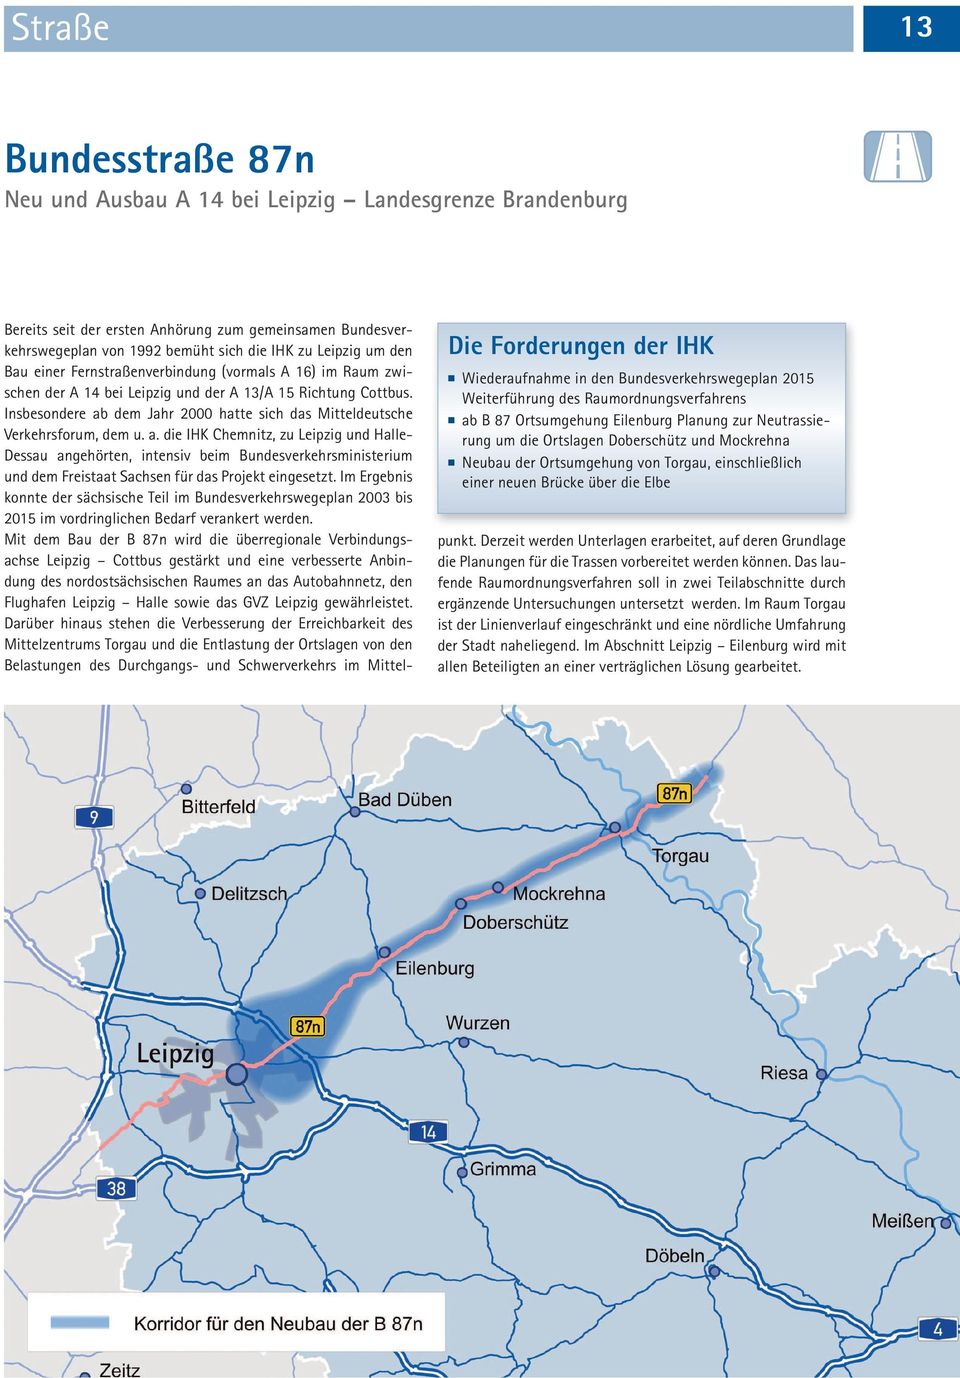 zum gemeinsamen Bundesverkehrswegeplan von 1992 bemüht sich die IHK zu Leipzig um den Bau einer Fernstraßenverbindung (vormals A 16) im Raum zwischen der A 14 bei Leipzig und der A 13/A 15 Richtung